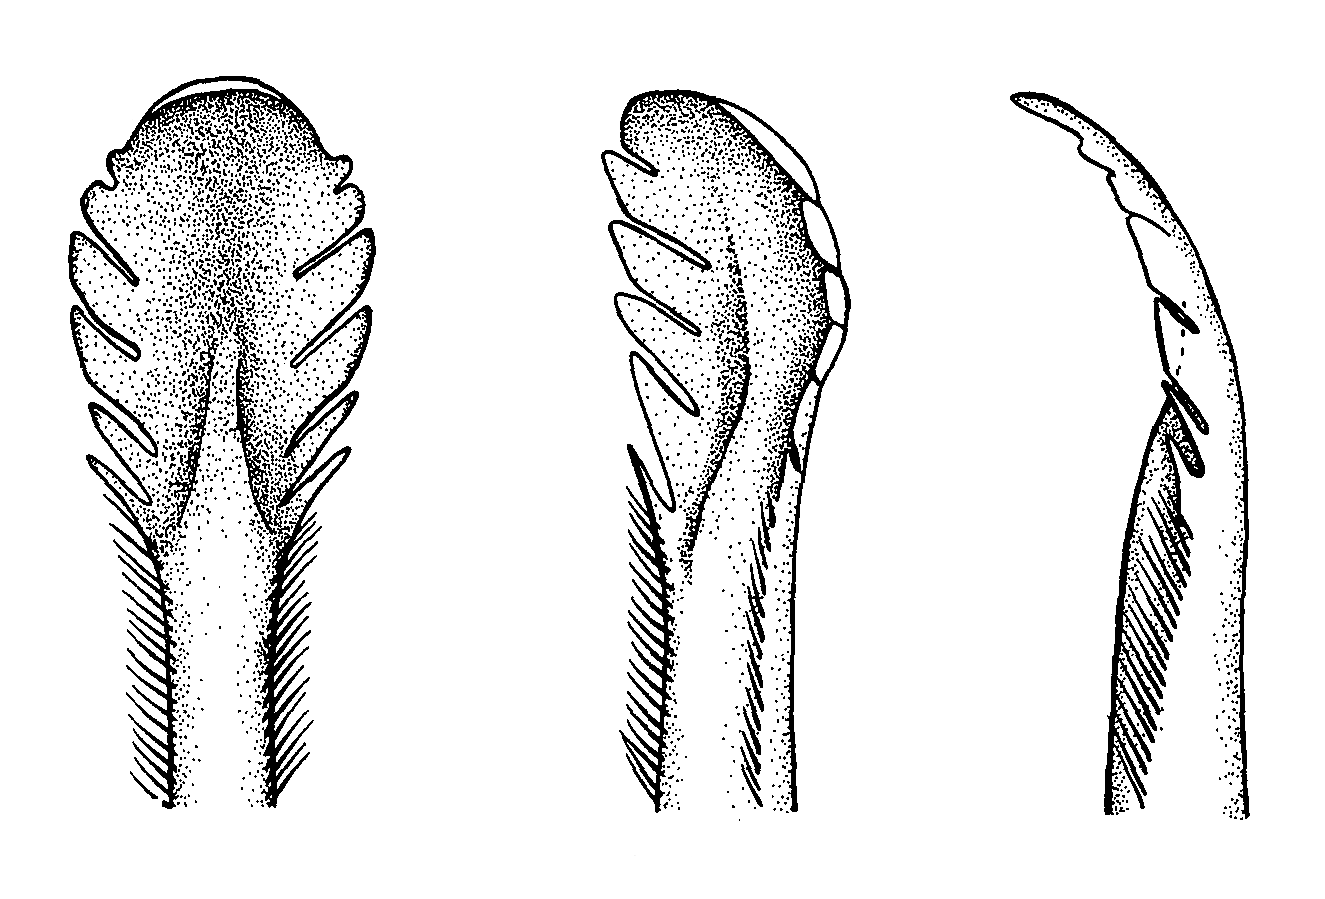 Uca dussumieri spinata: Crane (1975) image